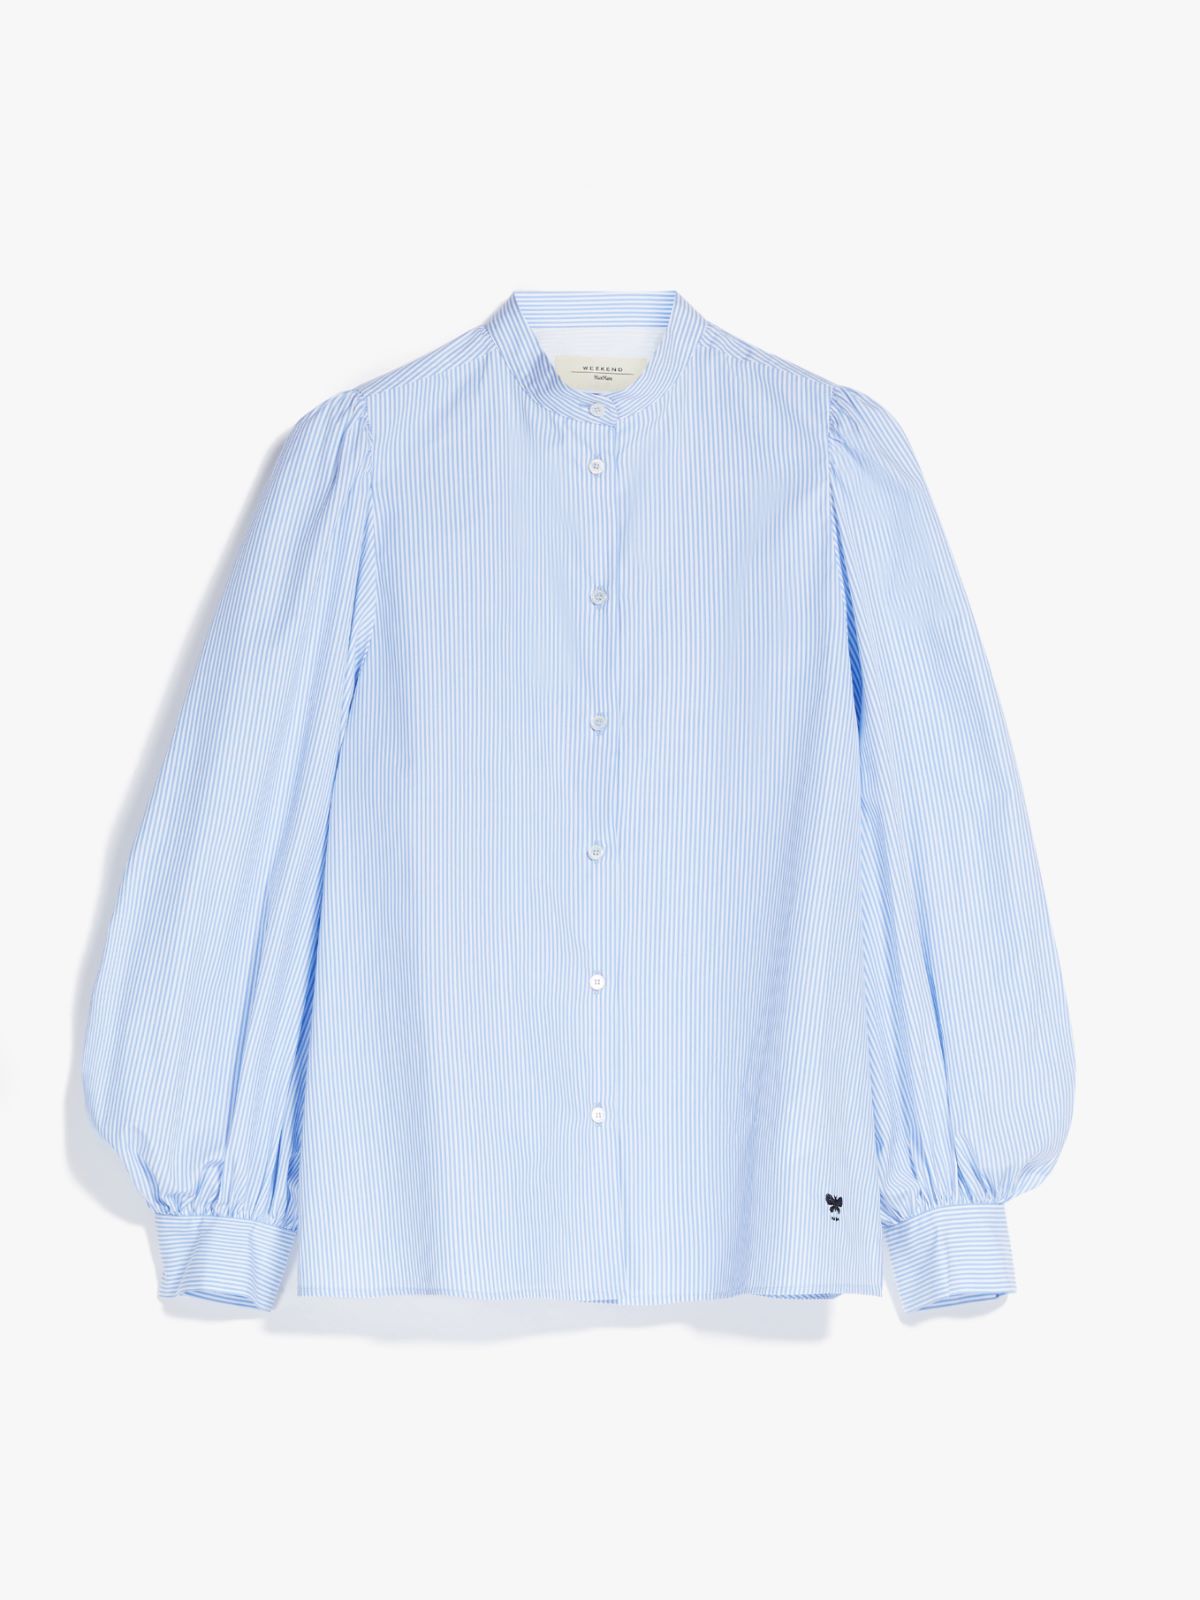 Cotton shirt - LIGHT BLUE - Weekend Max Mara - 6